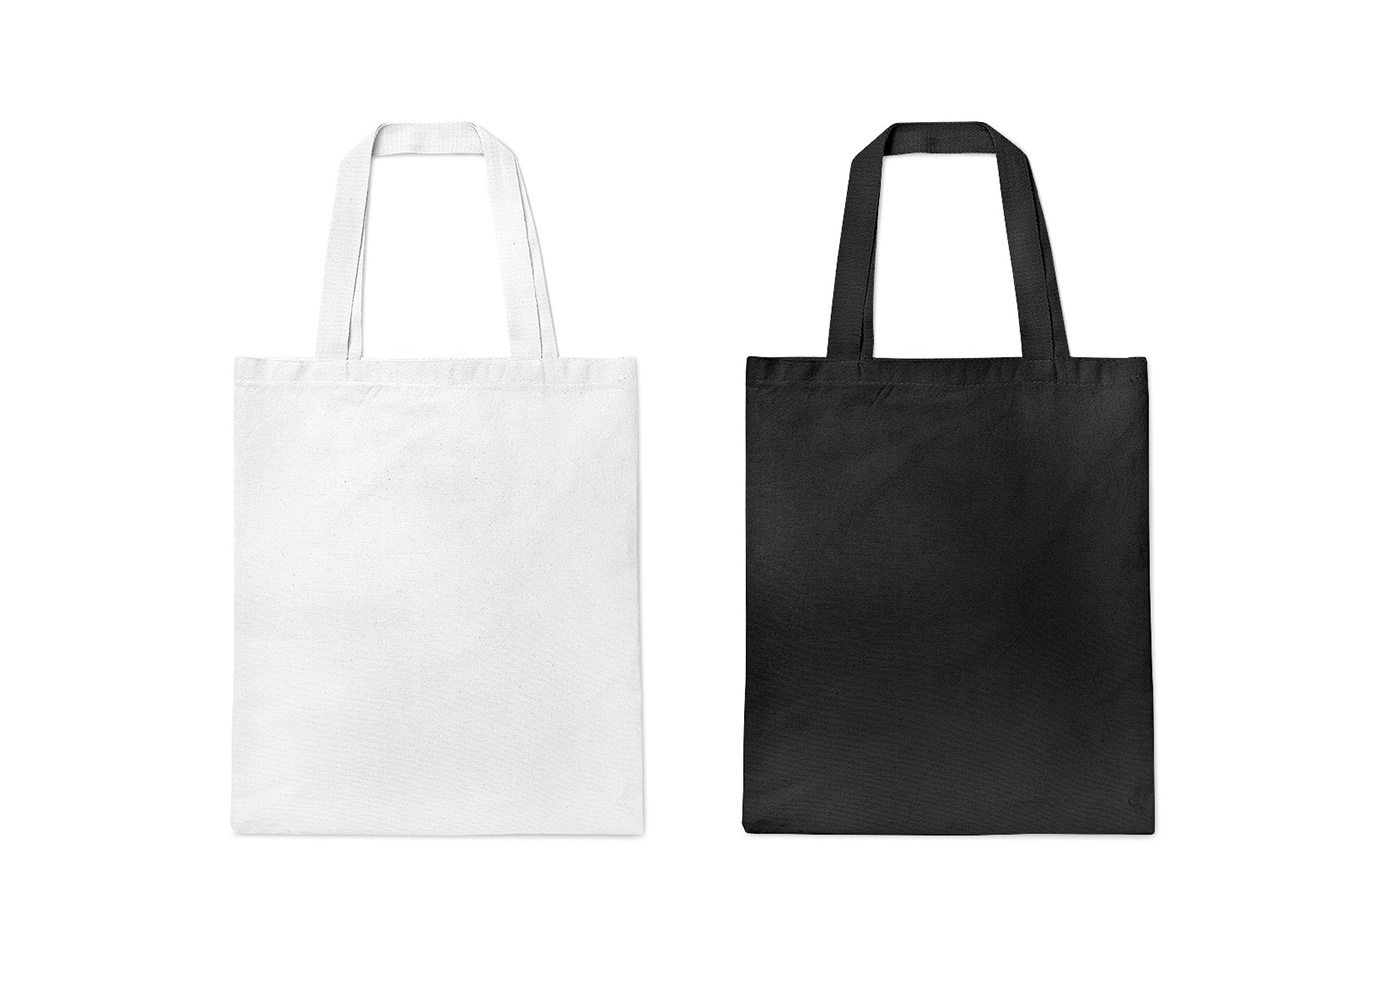 Mockup mockup design mockup free mockup psd mockups product Tote Bag Tote Bag Design tote bag mockup totebag